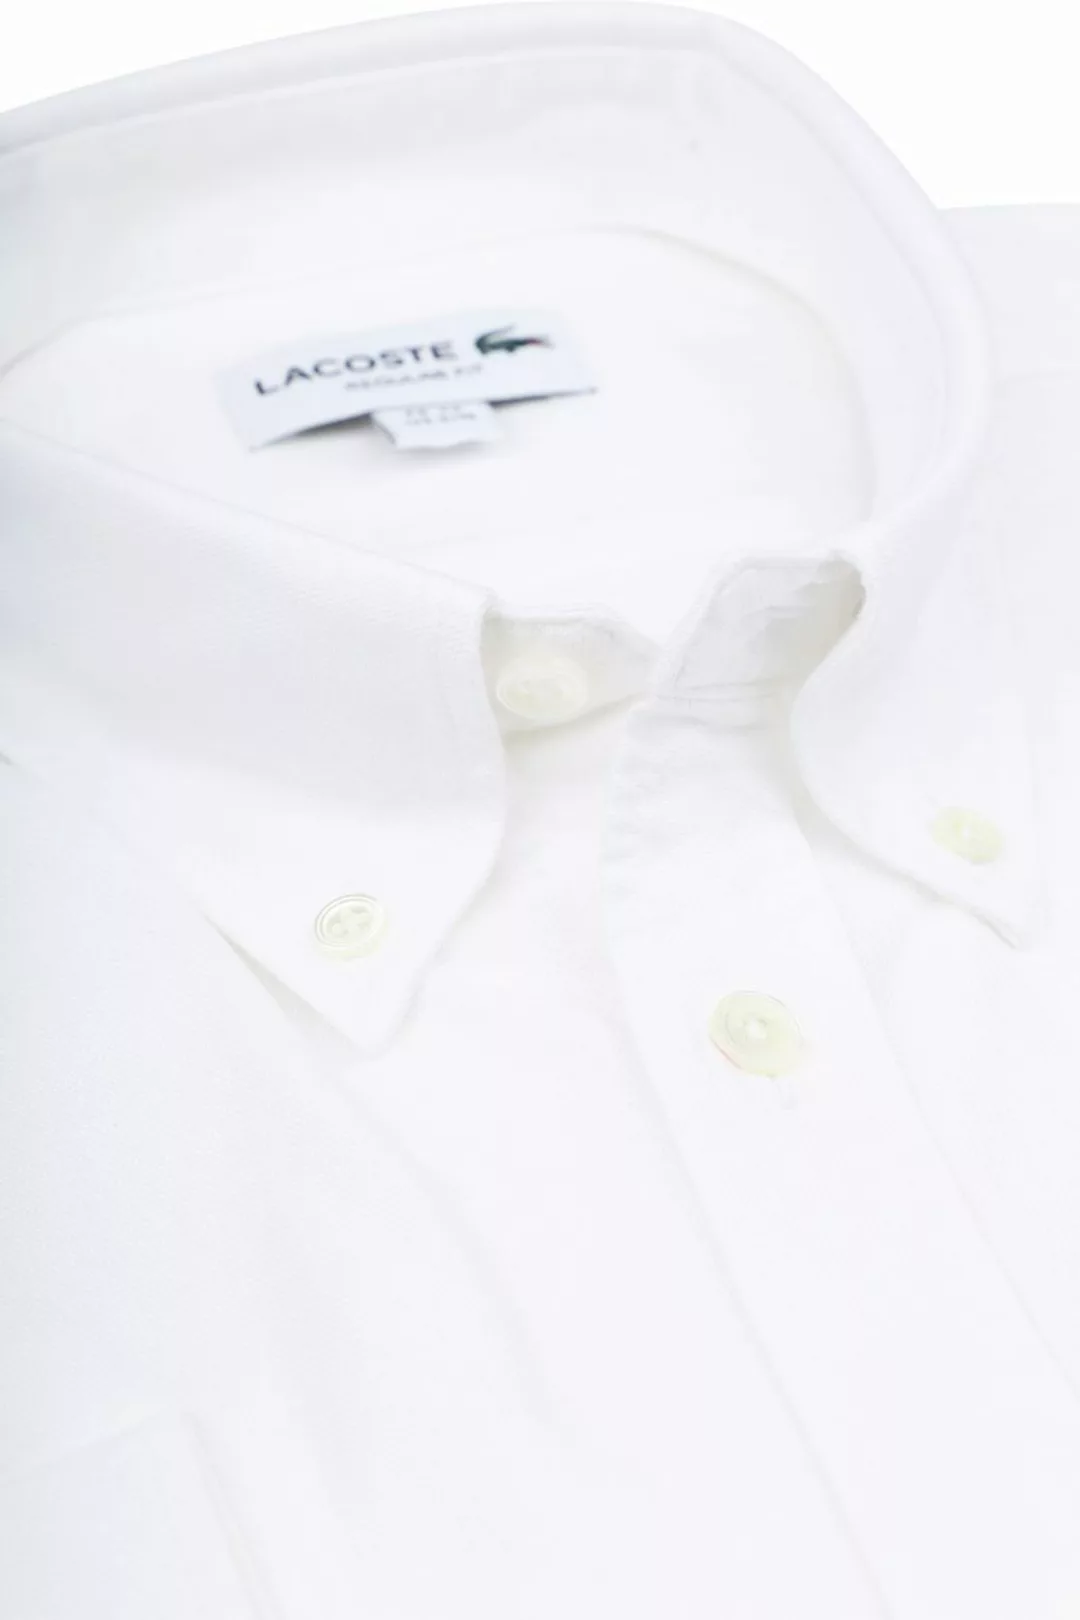 Lacoste Oxford Hemd Weiß - Größe 41 günstig online kaufen